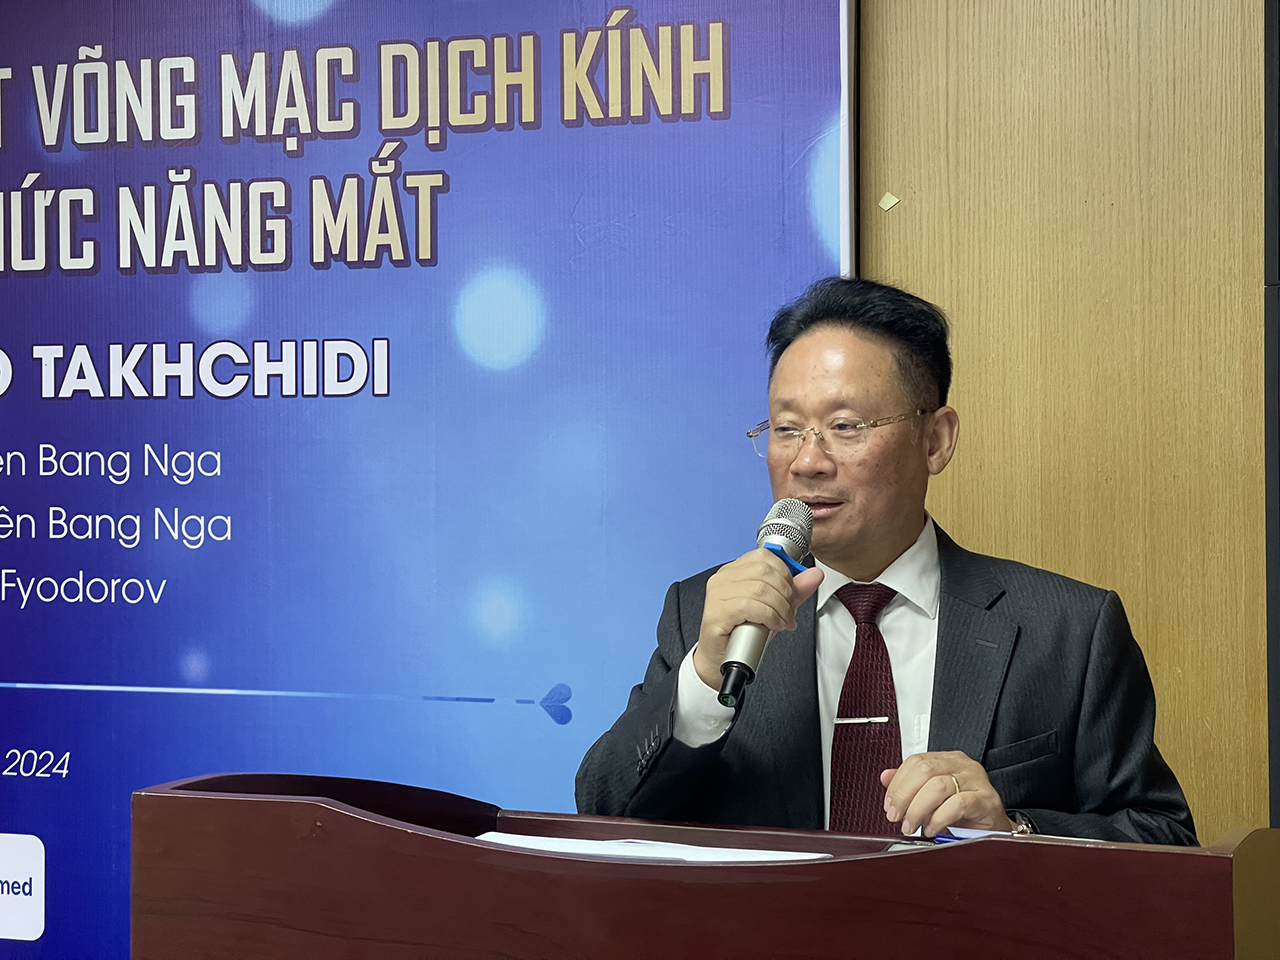 Ông Dương Chí Kiên - Chủ tịch HĐQT Tập đoàn y tế Việt – Nga